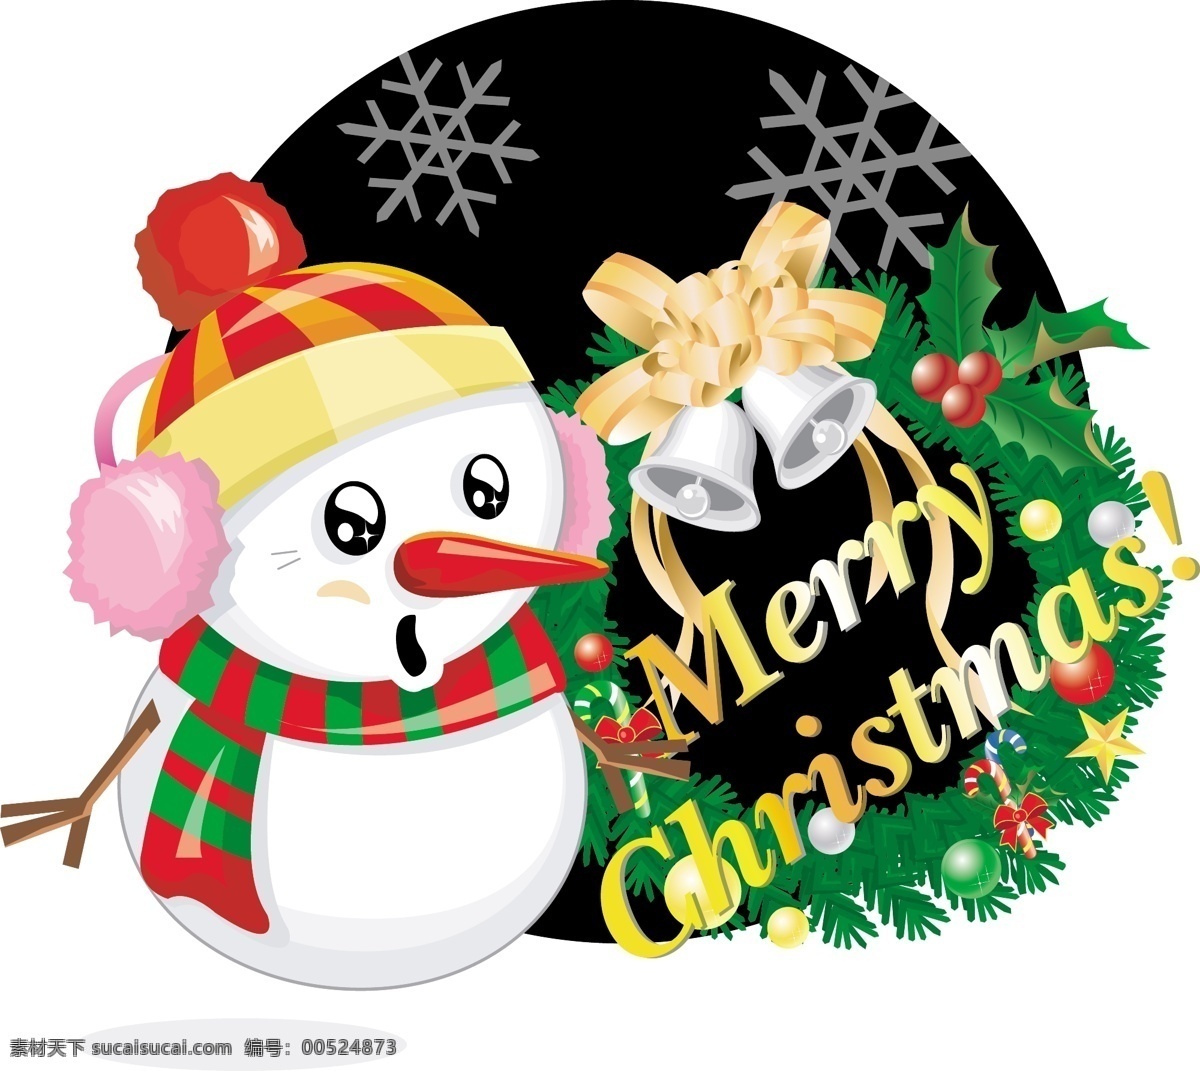 韩国 矢量 圣诞 雪人 图 模板 设计稿 圣诞节 圣诞雪人 矢量图 源文件 节日大全 节日素材